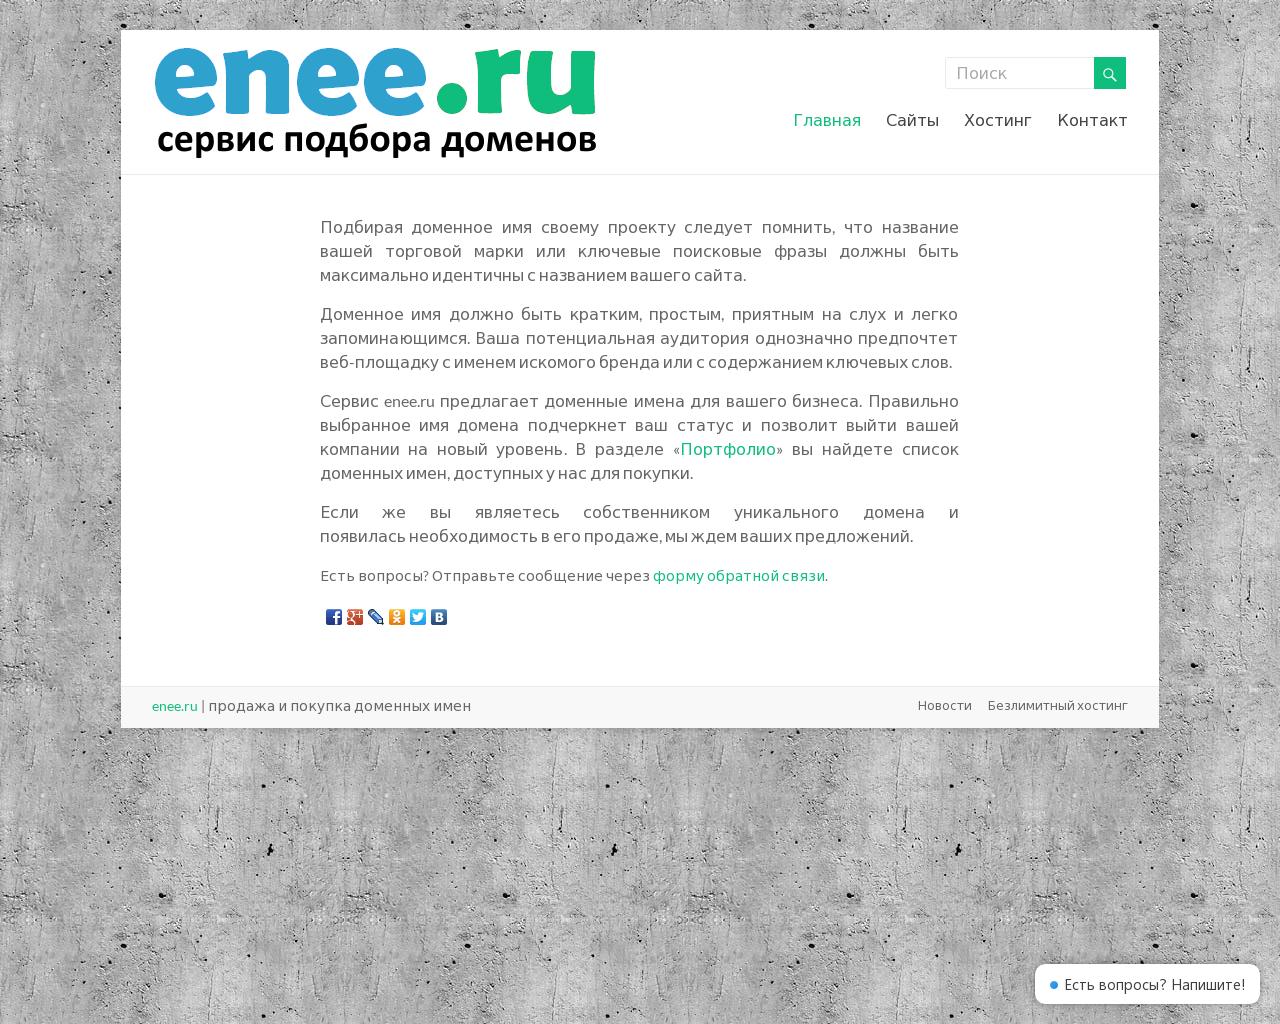 Изображение сайта enee.ru в разрешении 1280x1024